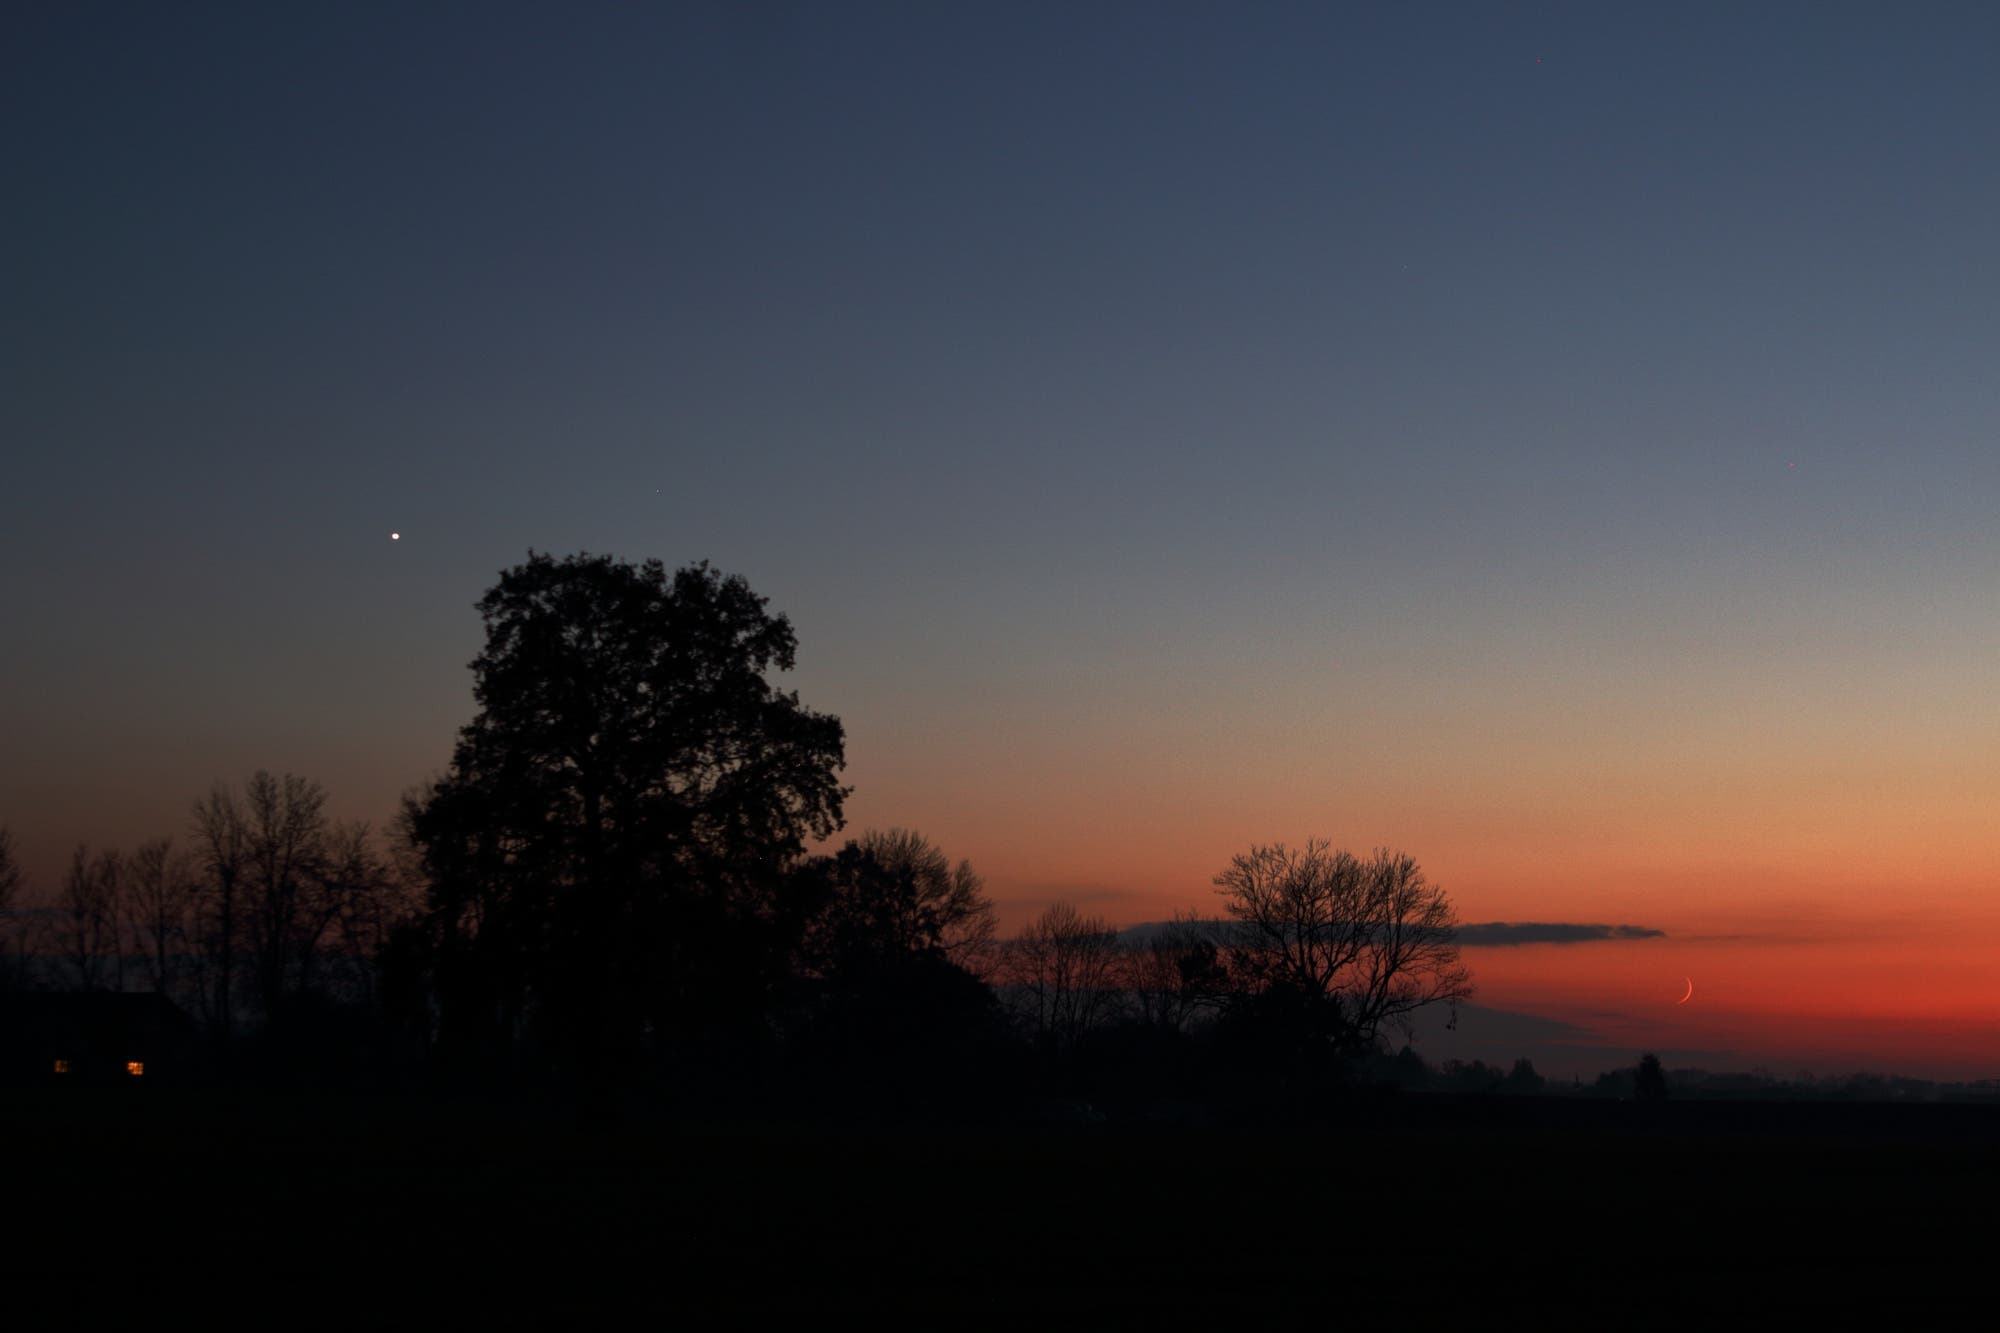 Mond/Neulicht und Abendstern Venus